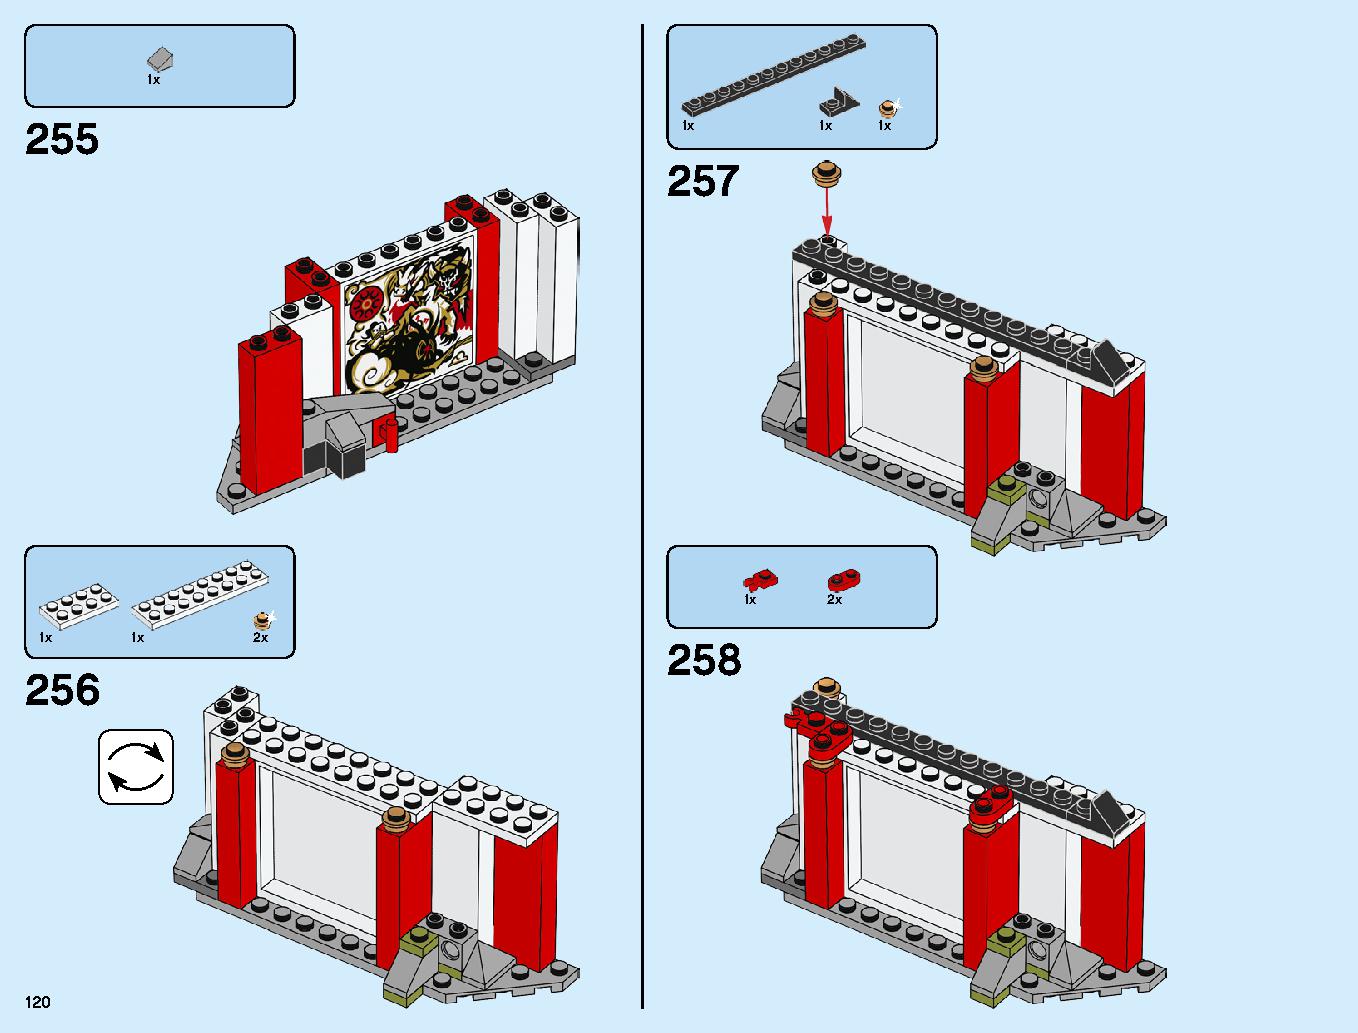 ニンジャ道場 70670 レゴの商品情報 レゴの説明書・組立方法 120 page